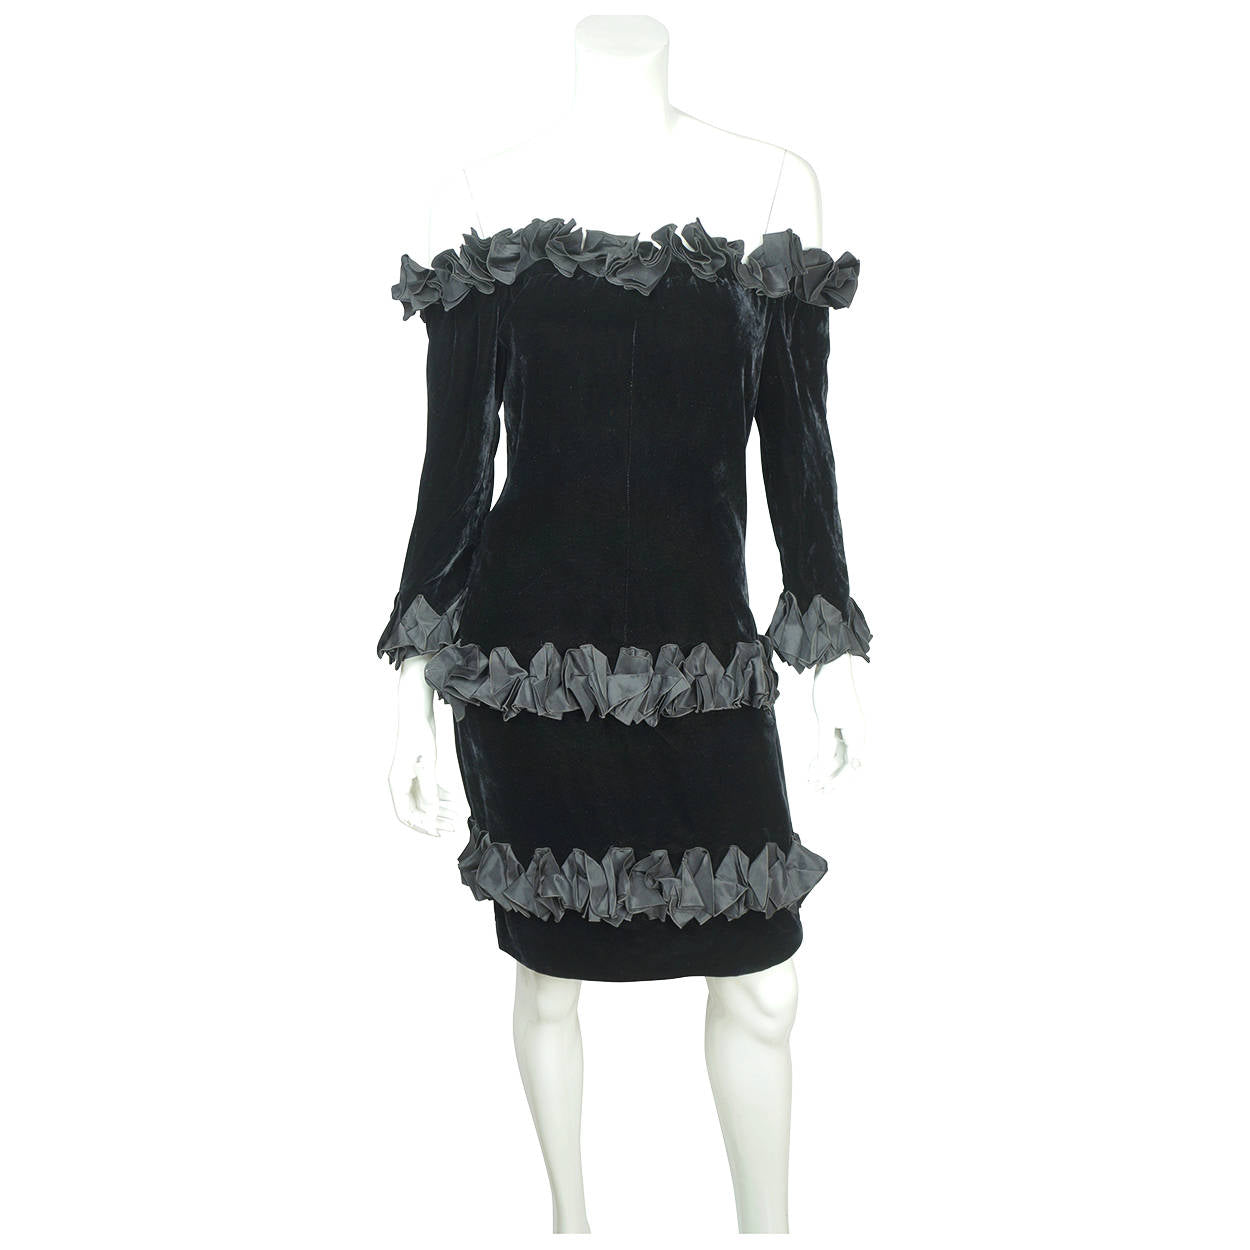 Vintage 1980s Yves Saint Laurent Dress in Black Velvet with Ruffles Size M